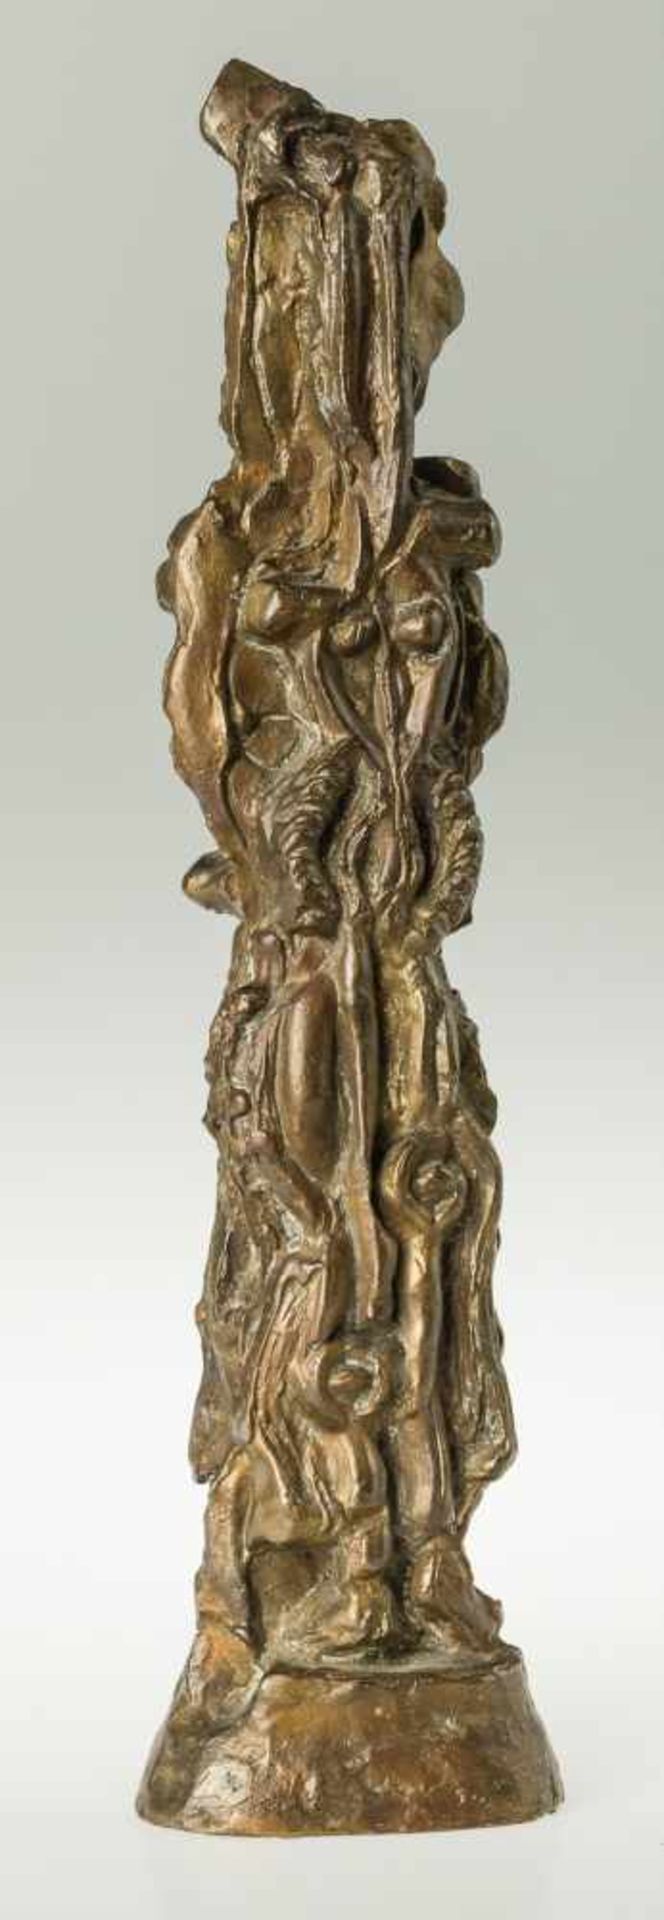 Oswald Oberhuber Meran 1931 geb. MANN UND FRAU Bronze, patiniert 43 x 11,9 x 7,5 cm Auflage: 2/6